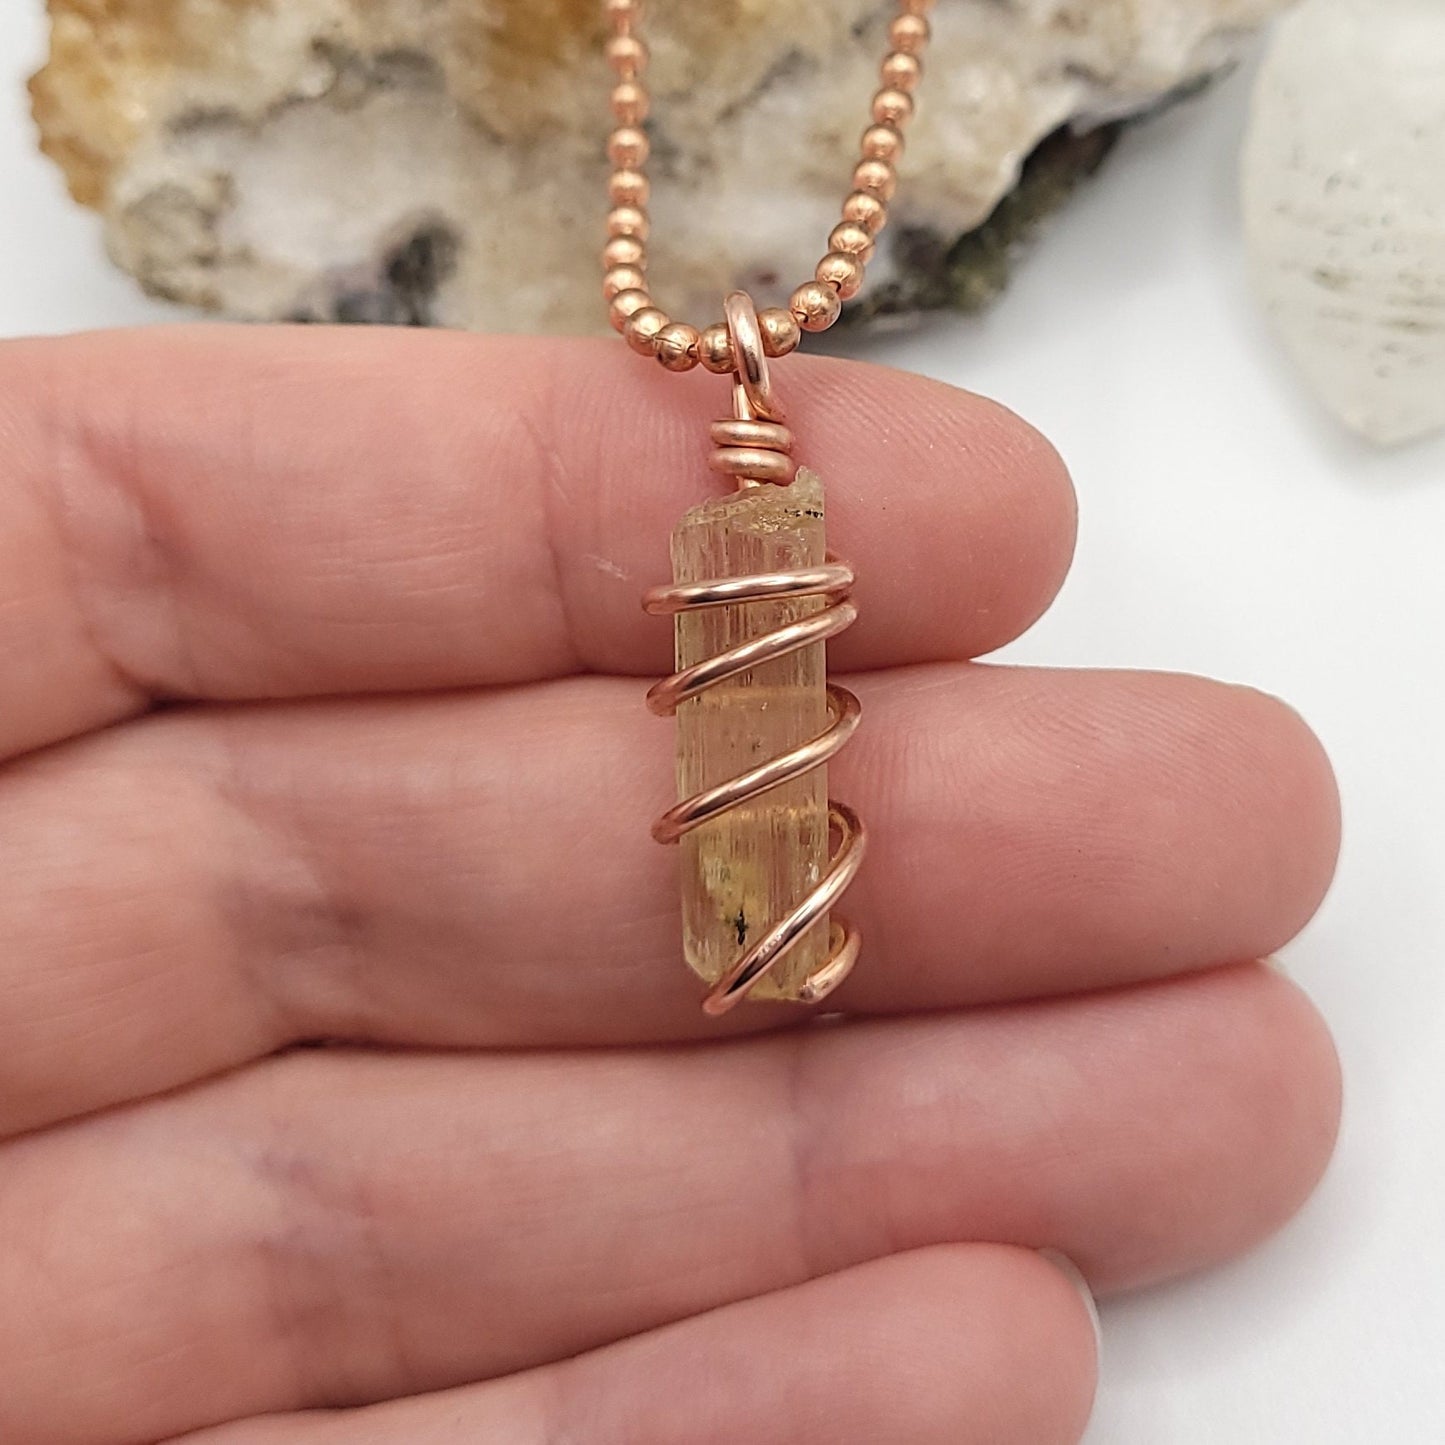 Scapolite Necklace, Copper Wire Wrapped Scapolite Pendant